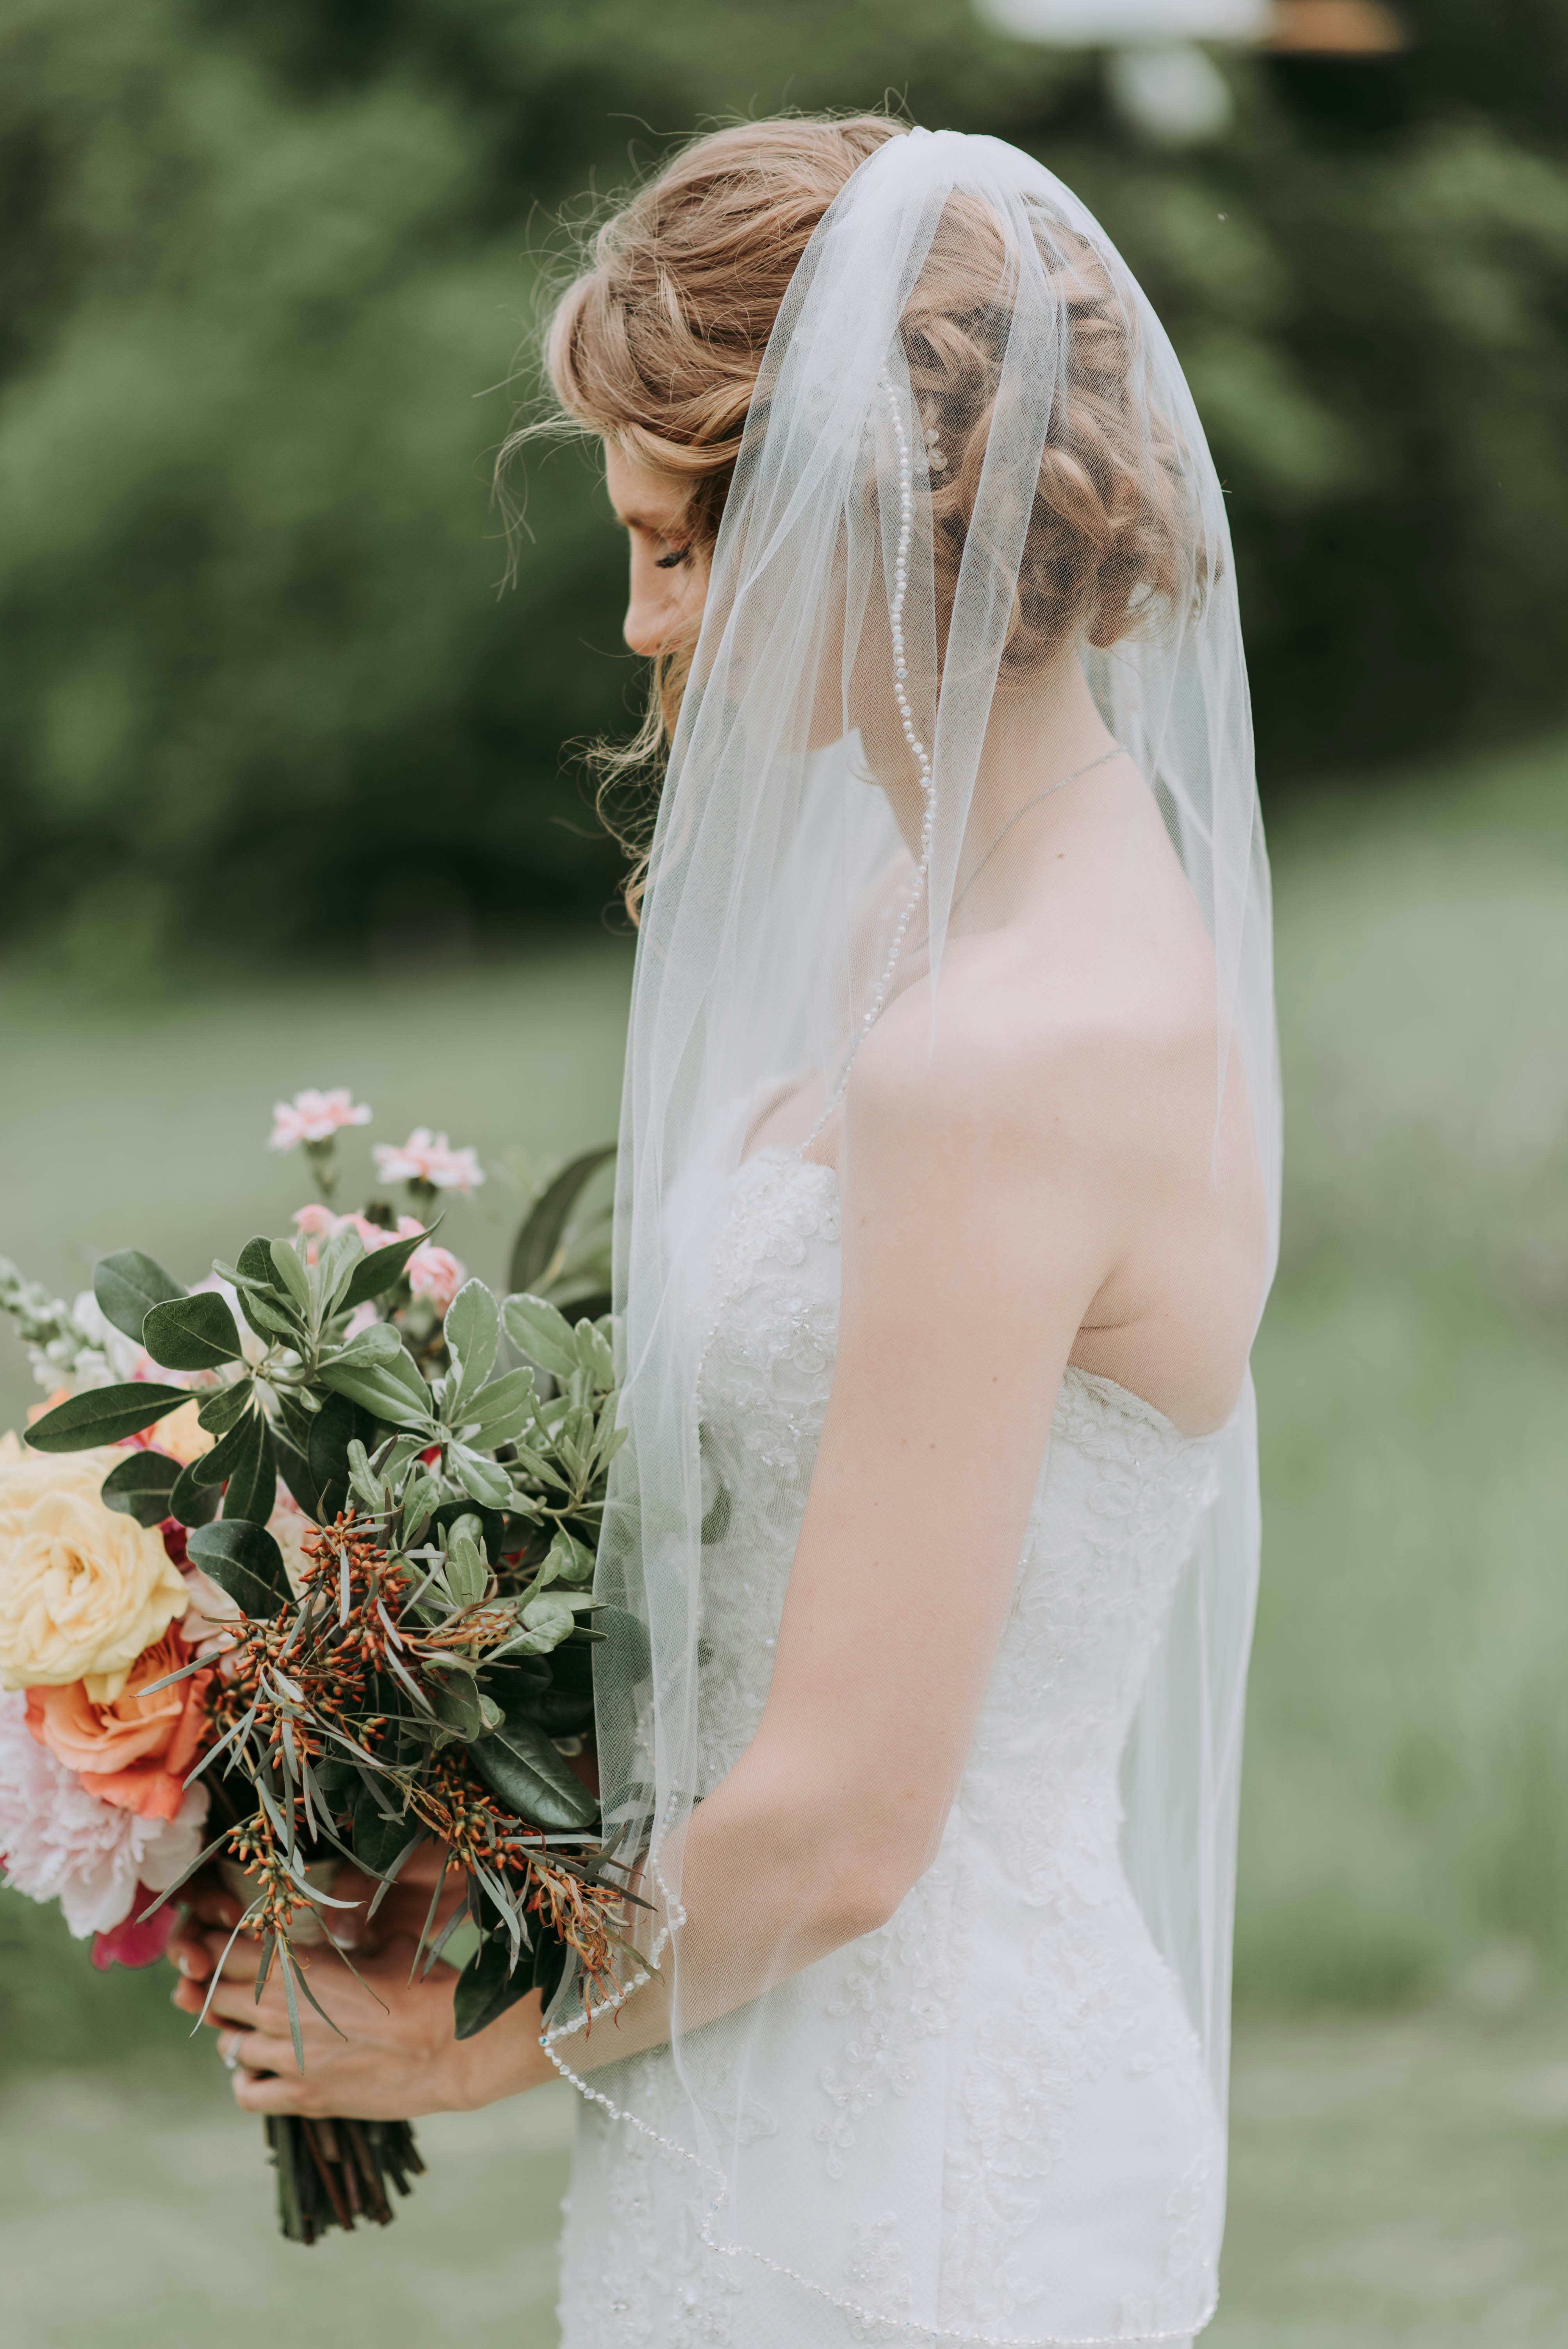 Una novia triste sosteniendo un ramo de flores | Foto: Unsplash